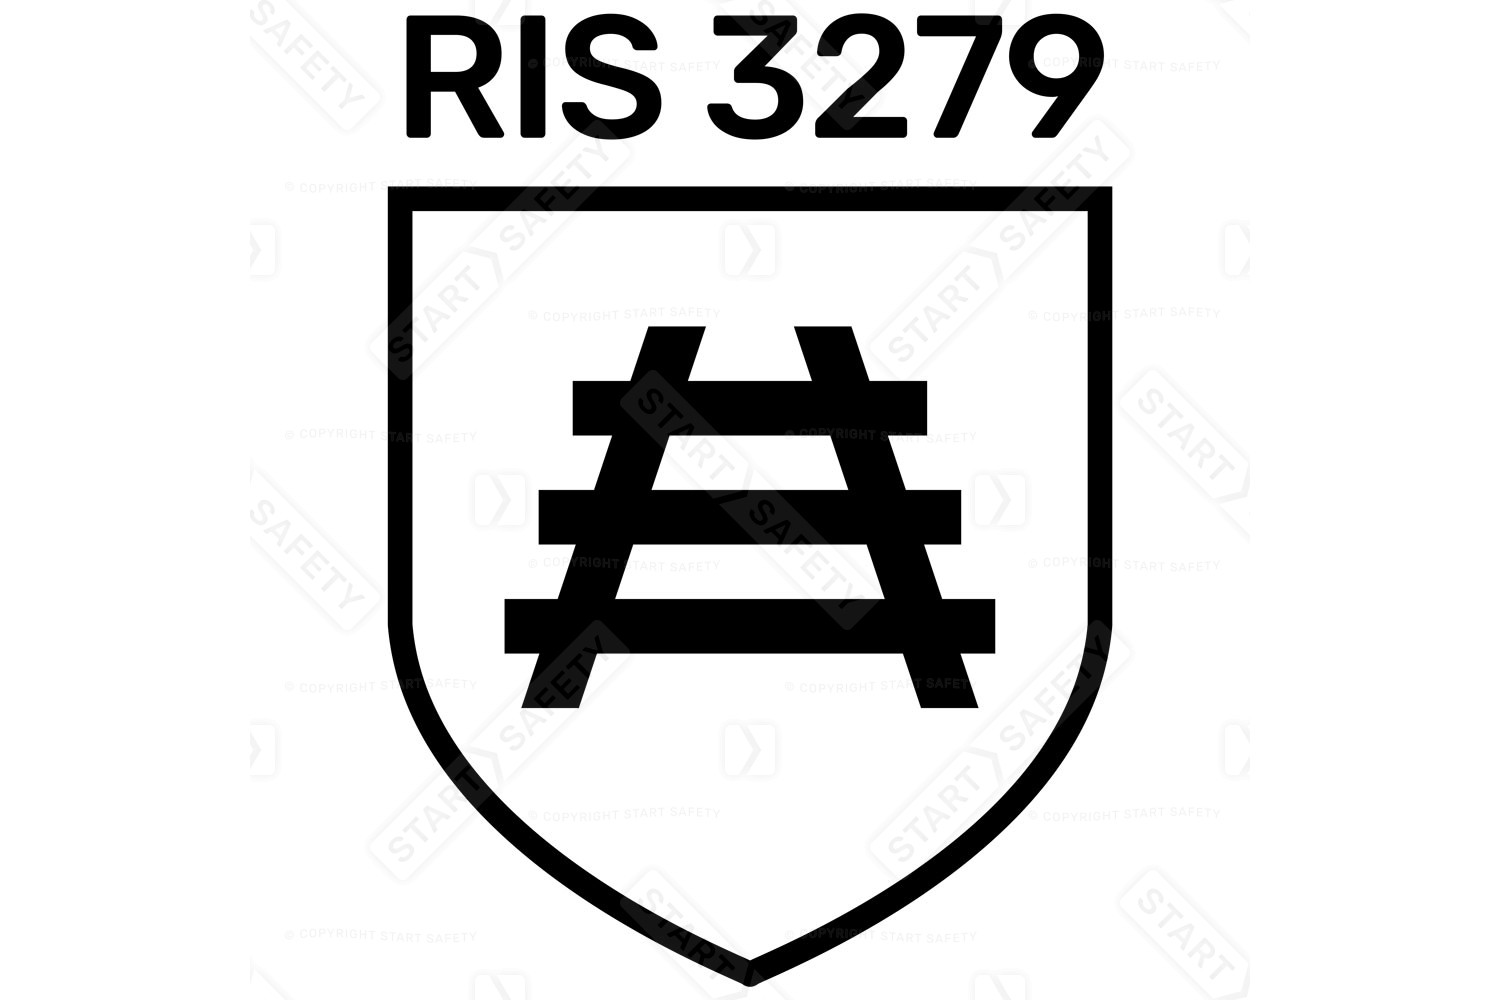 RIS-3279 Railway Hi Vis Workwear Standard